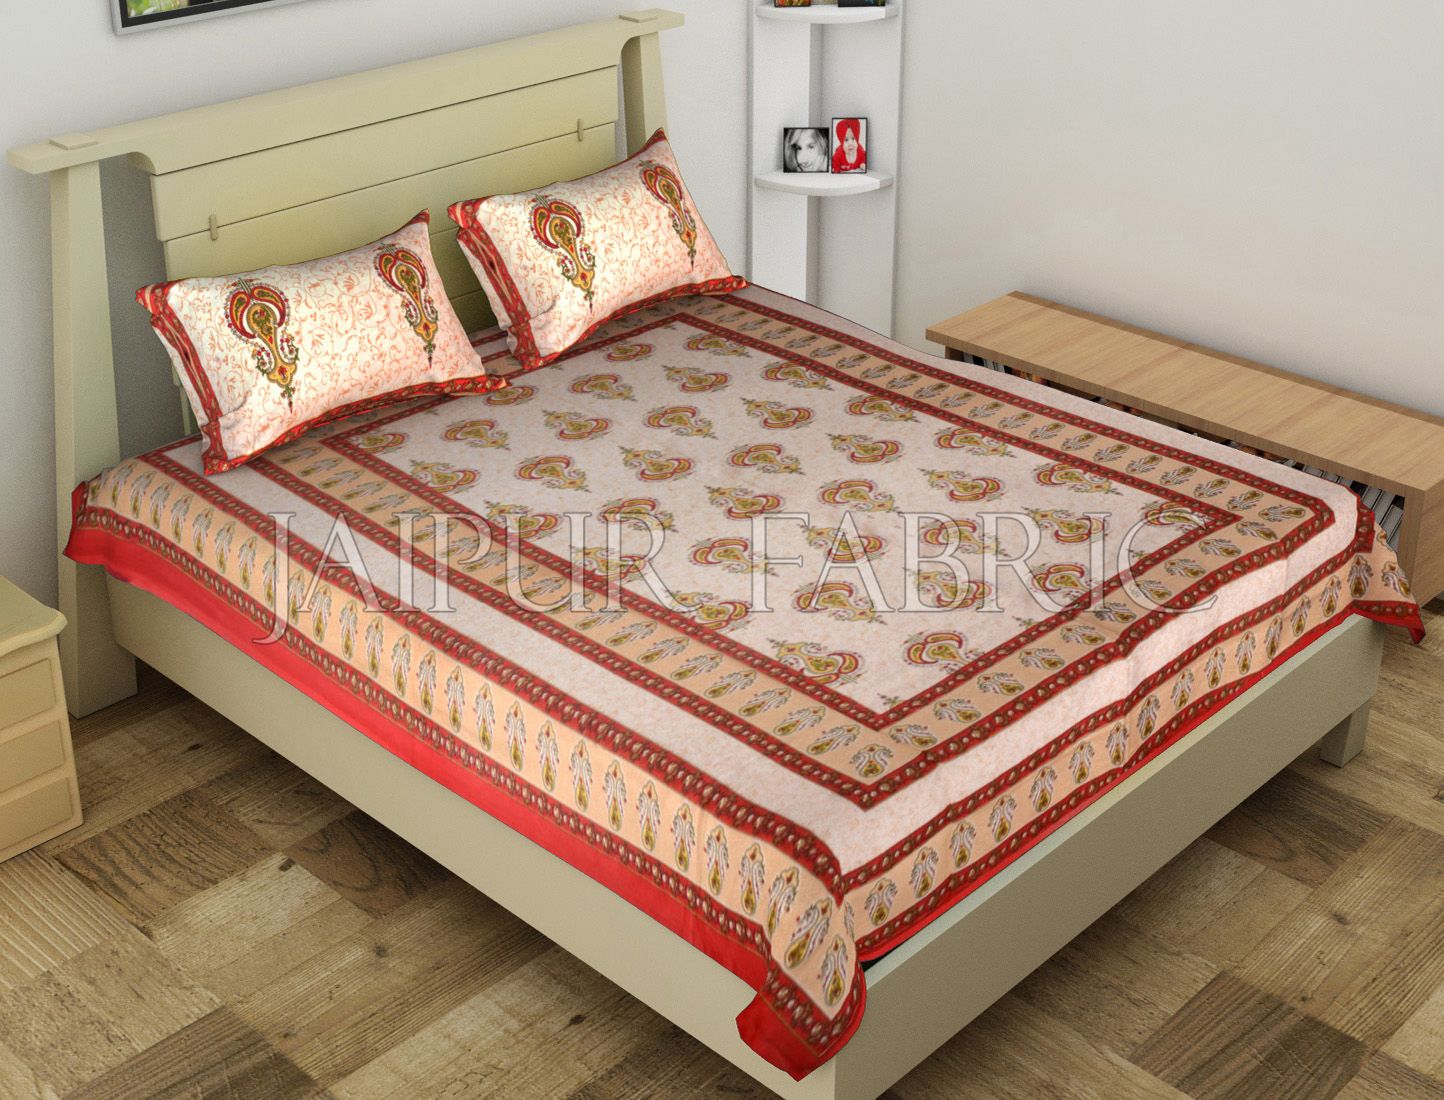 Red Jaipuri Keri Printed Cotton Single Bed Sheet